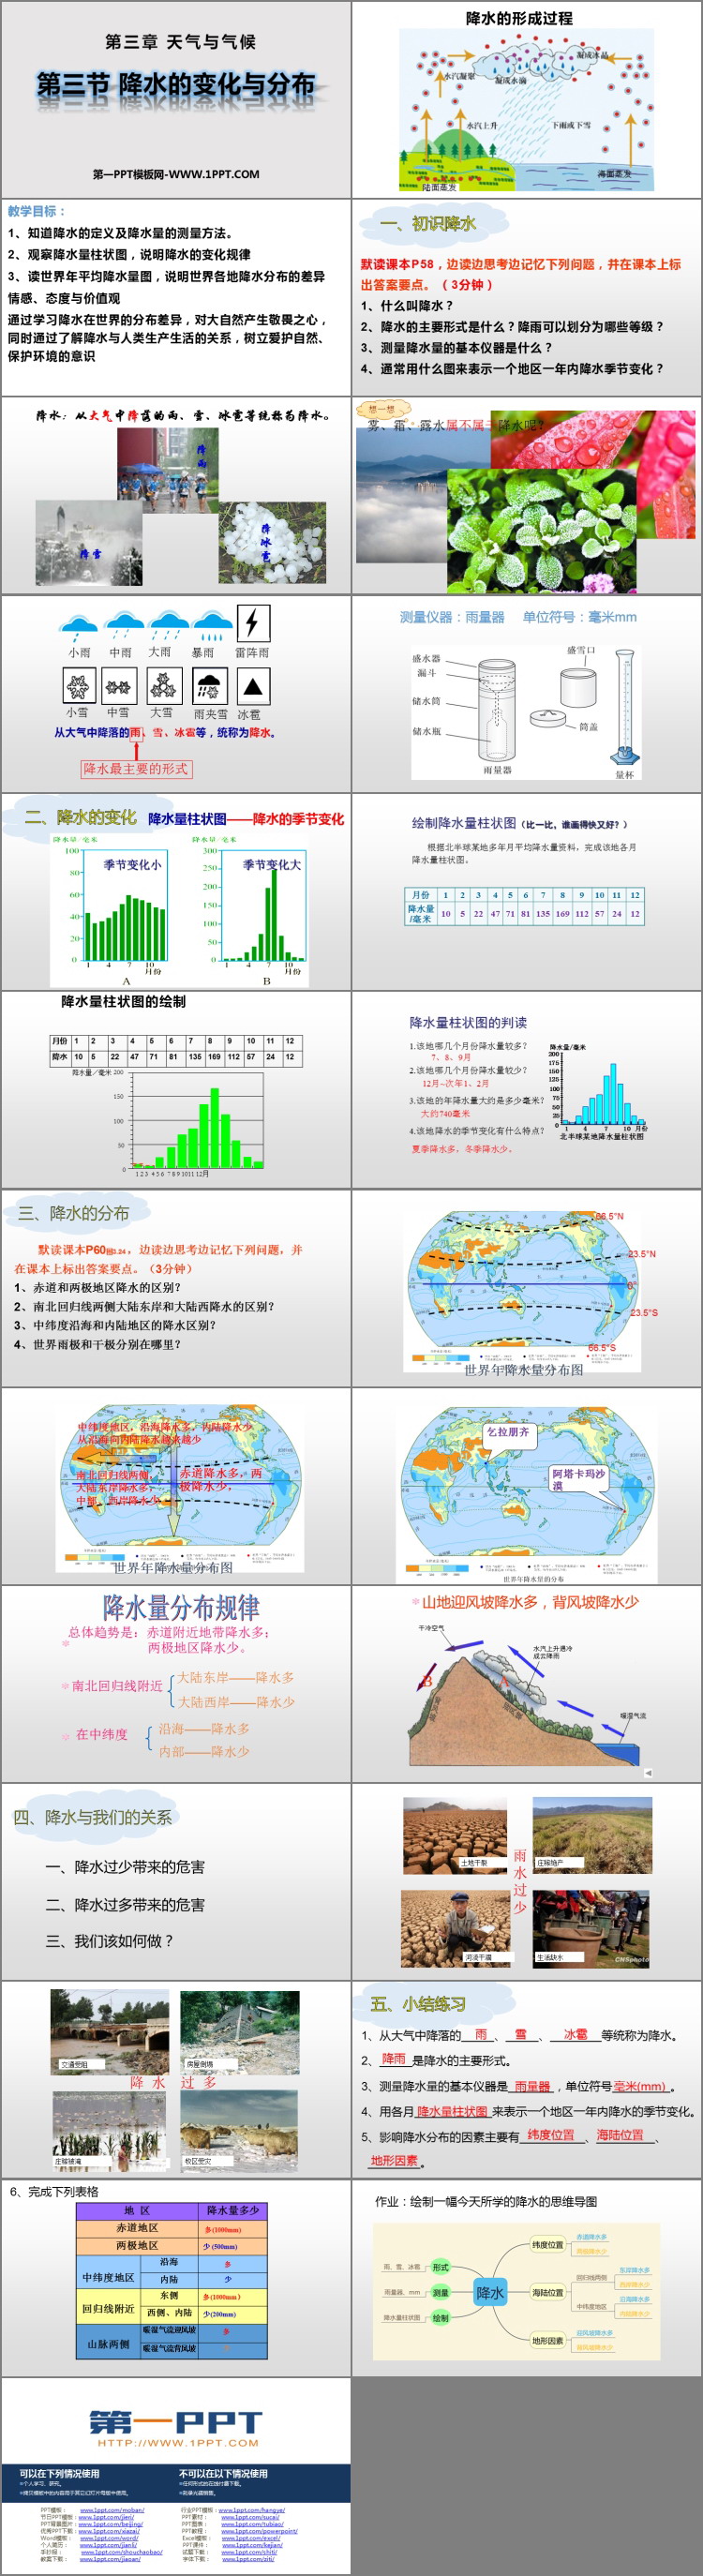 《降水的变化与分布》天气与气候PPT课件下载-预览图02